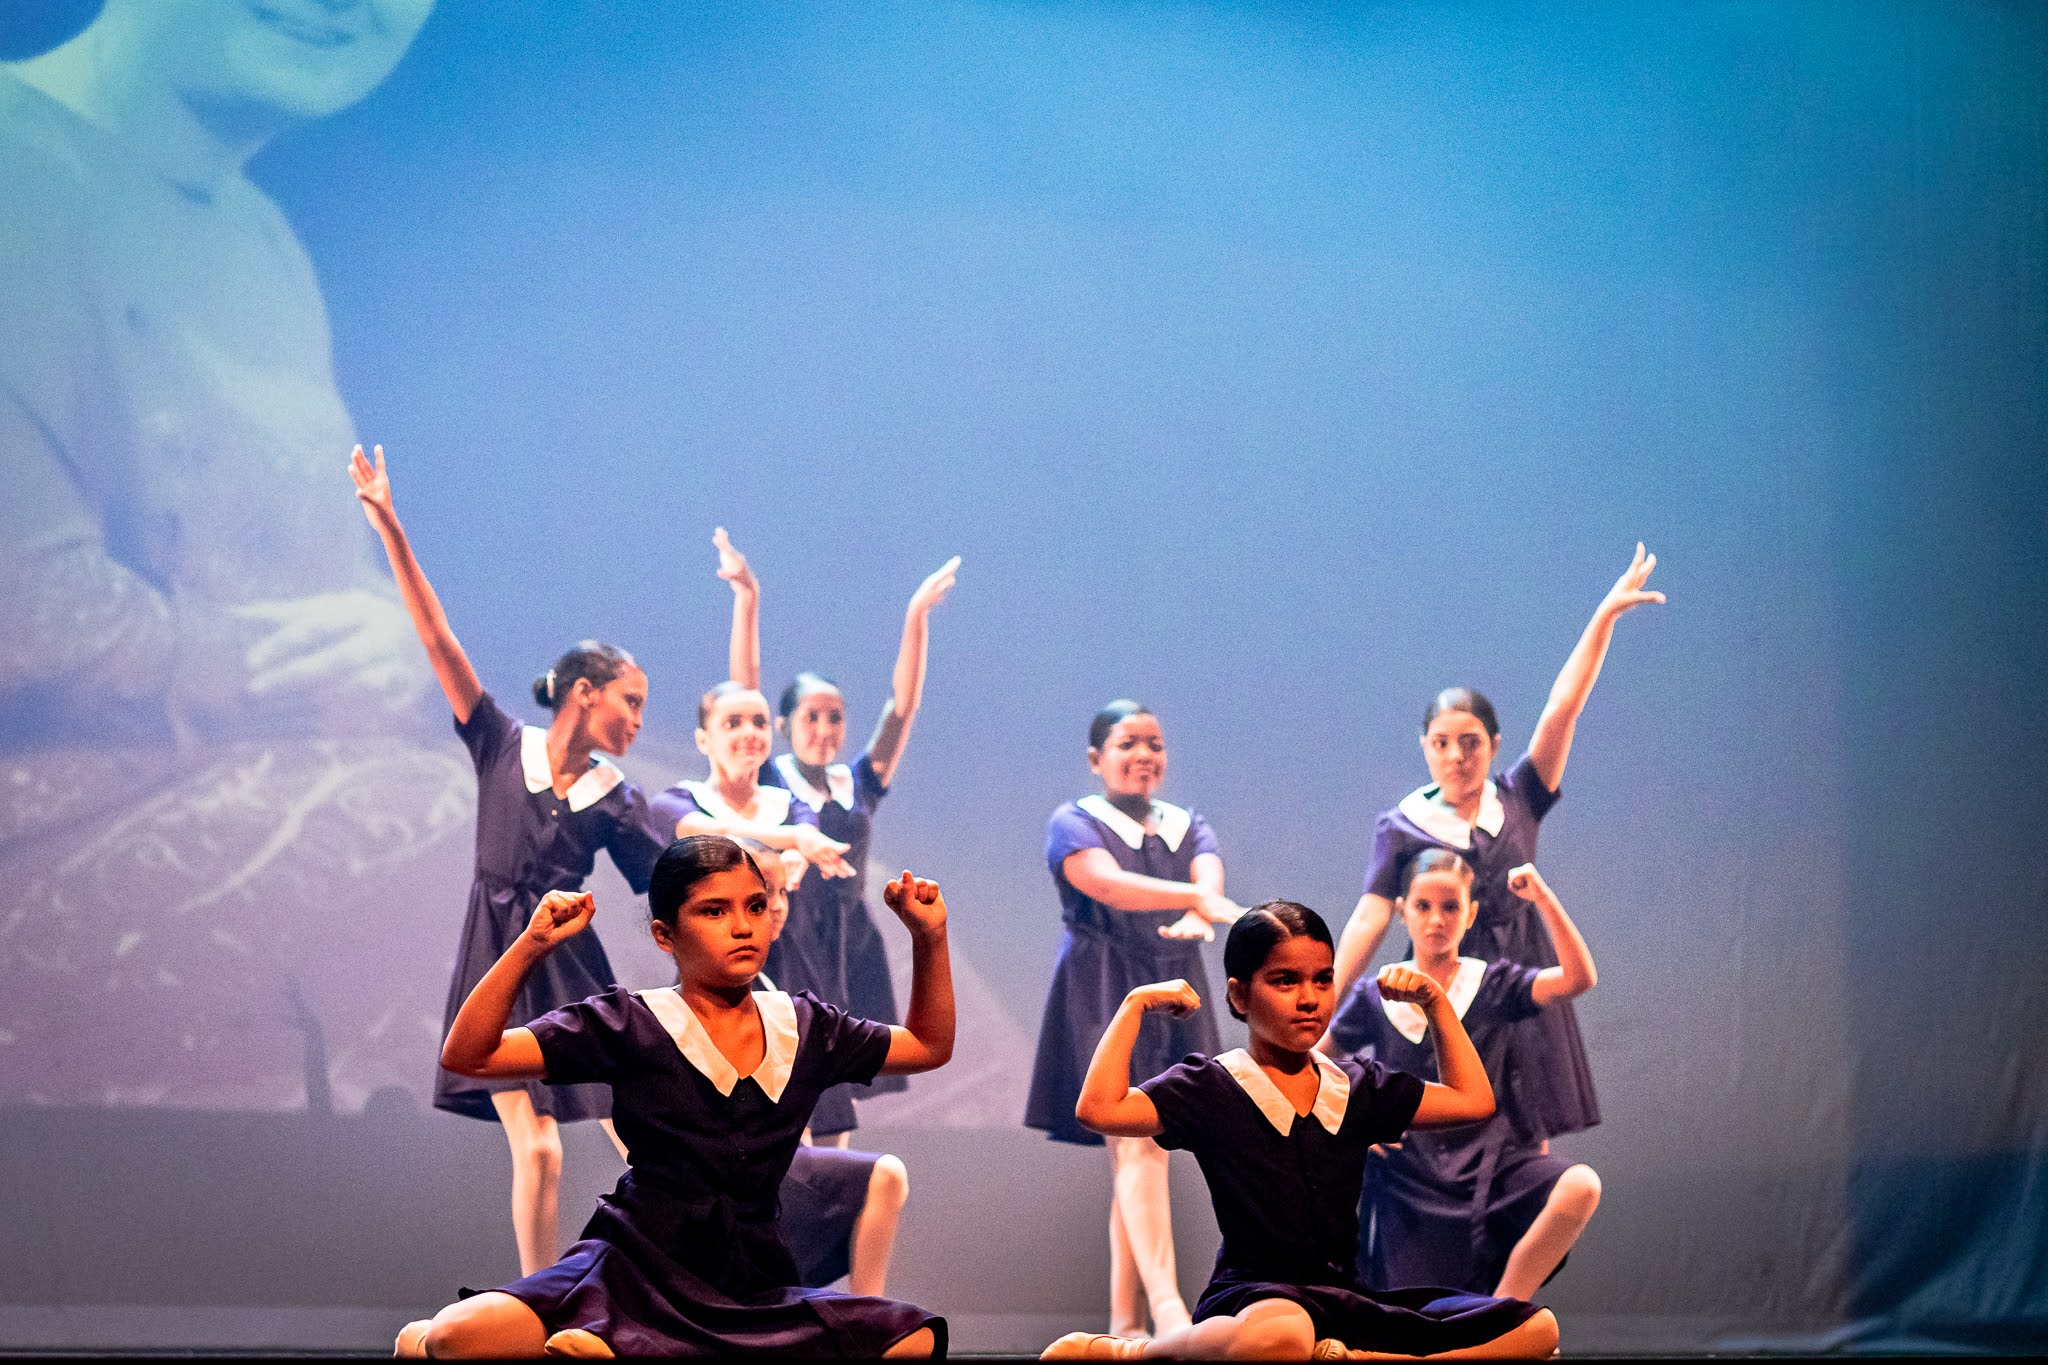 Ballet Manguinhos volta aos palcos encenando resistência e inspiração